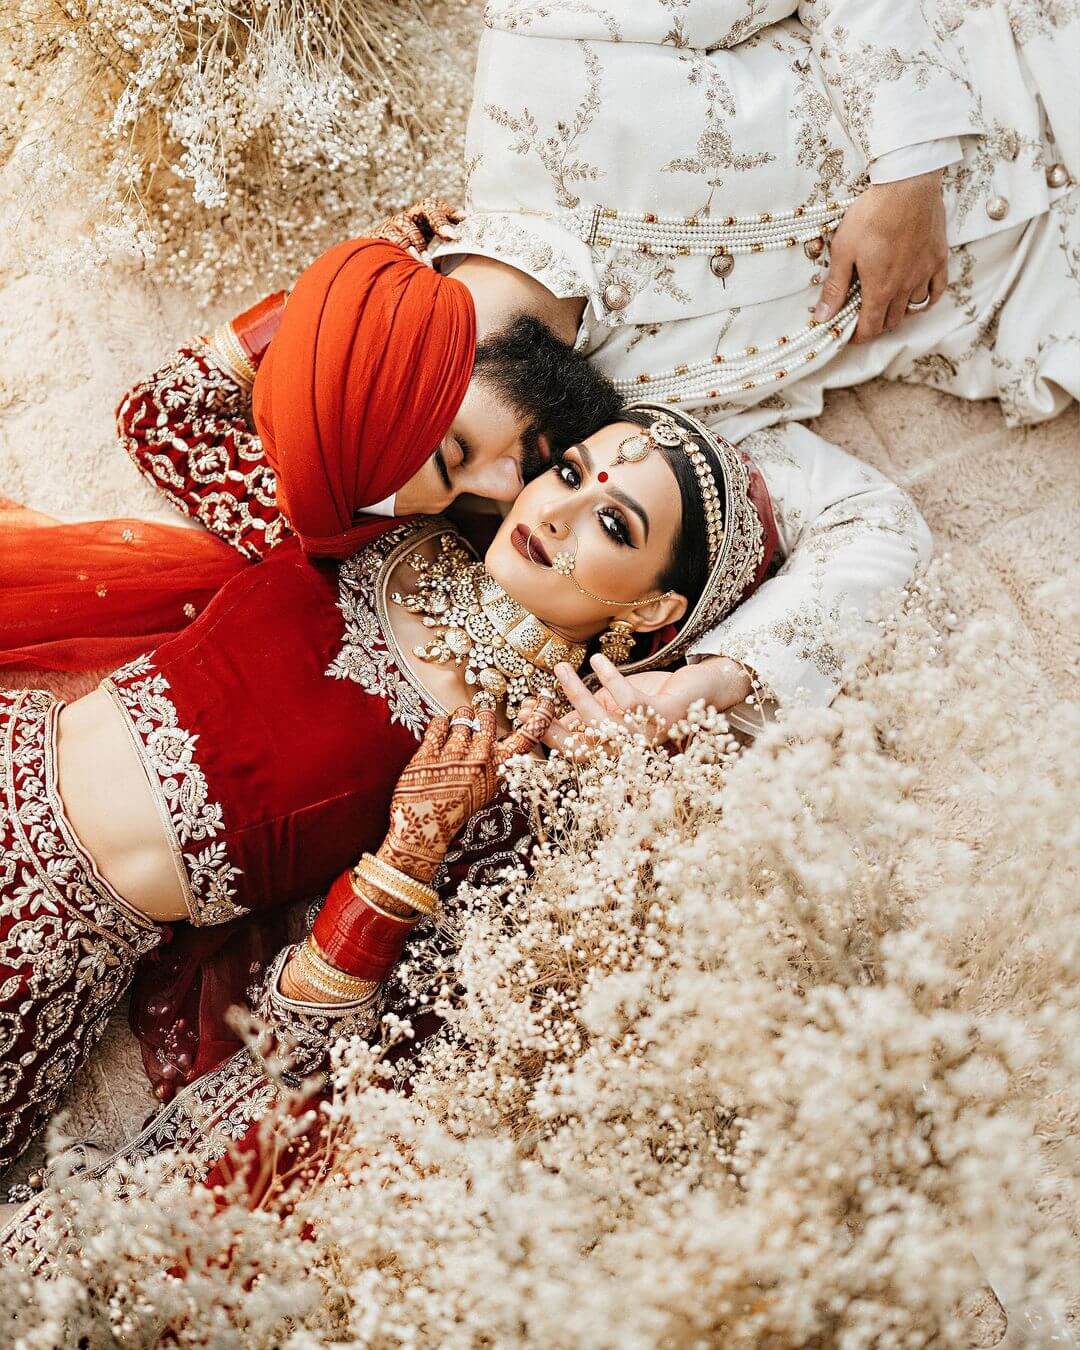 wedding-poses-photography-poses-Indian-couple (1) - FashionShala